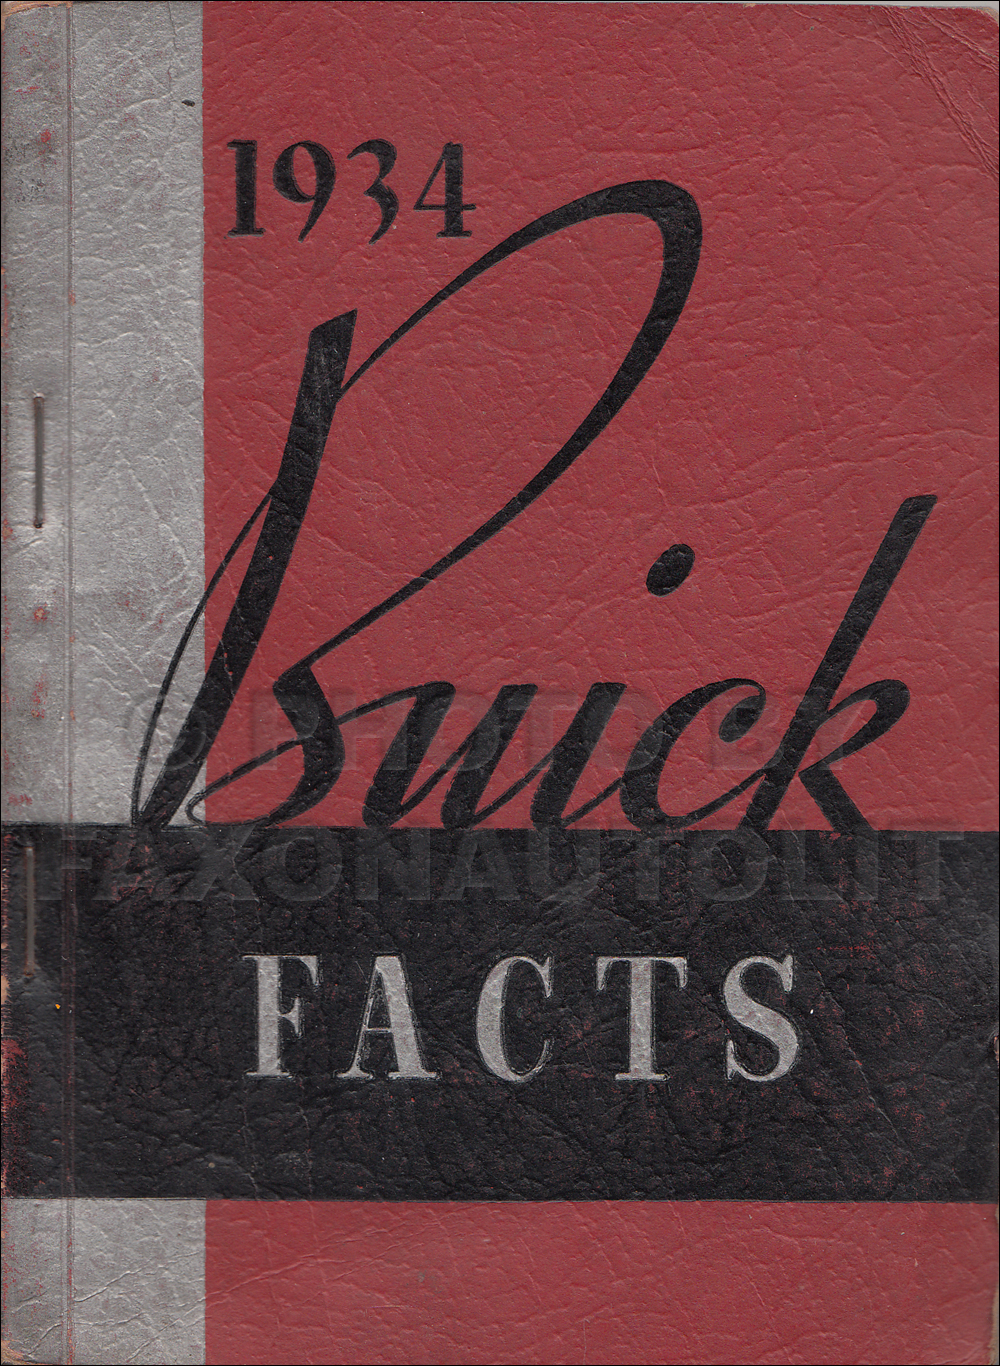 1934 Buick Facts Book Original